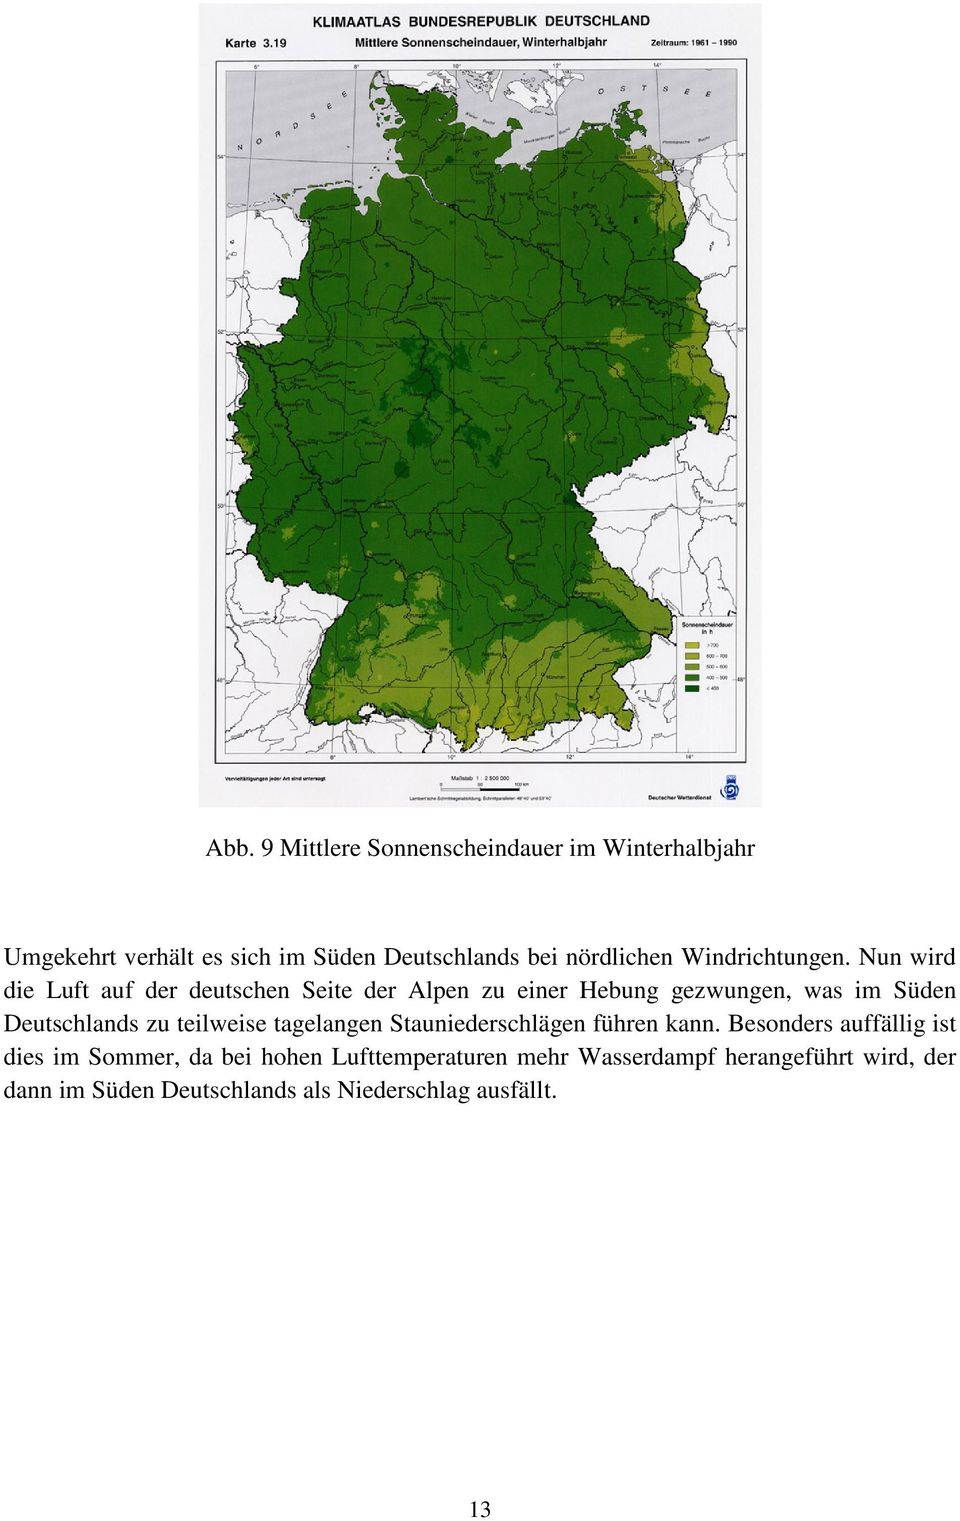 Nun wird die Luft auf der deutschen Seite der Alpen zu einer Hebung gezwungen, was im Süden Deutschlands zu